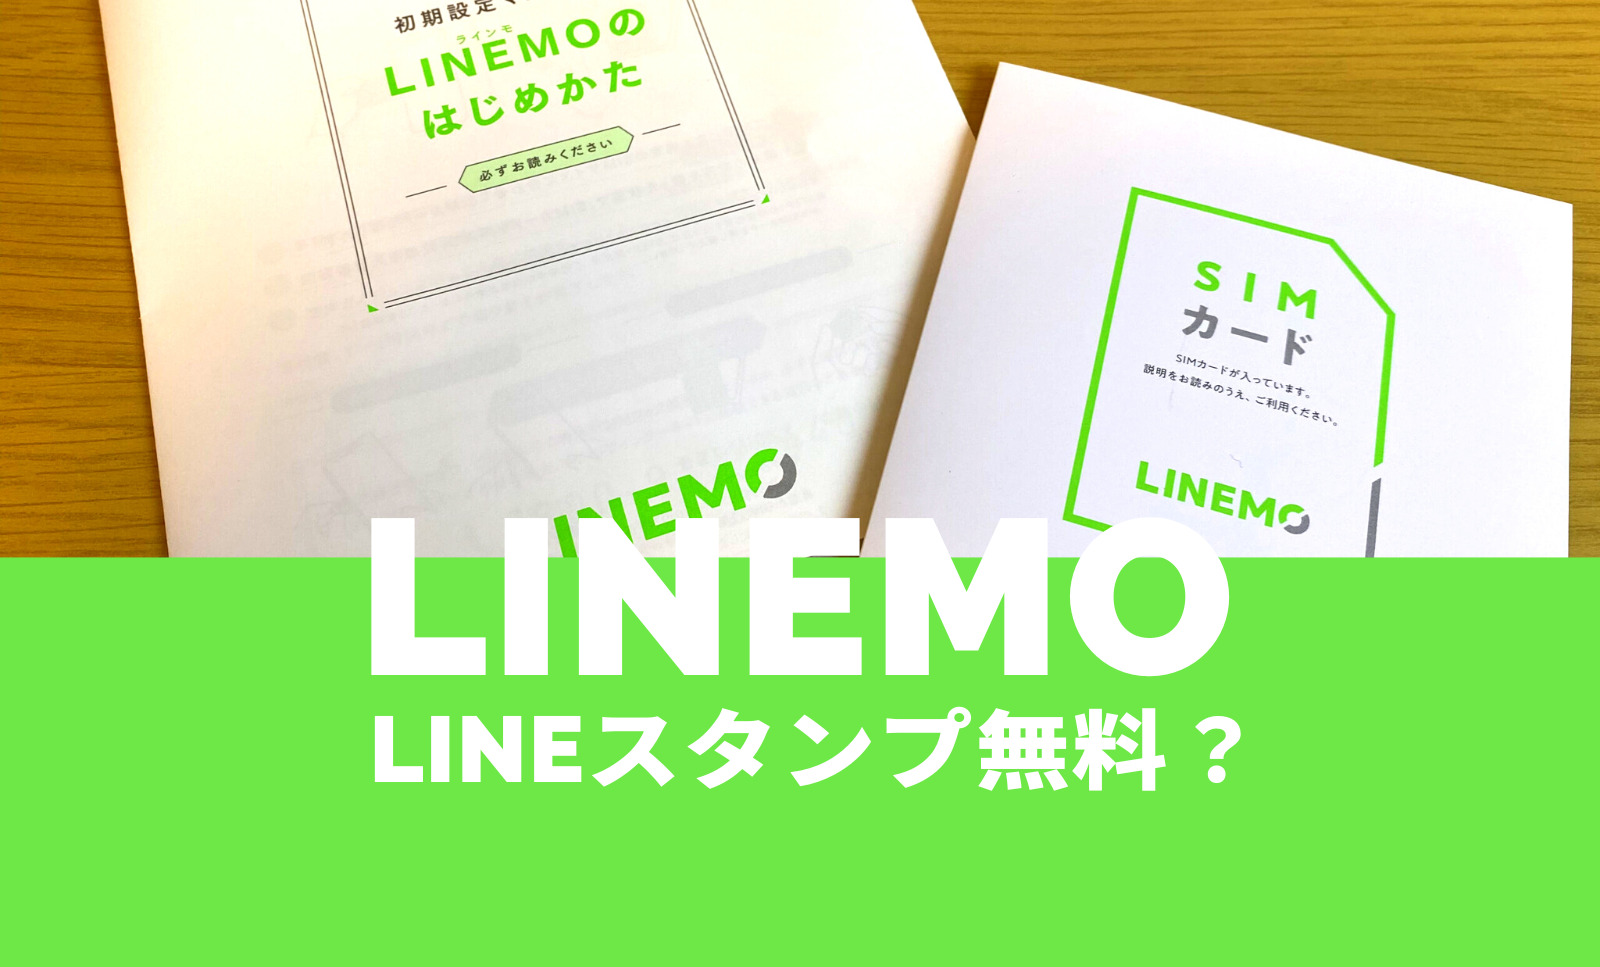 LINEMO(ラインモ)のLINEスタンプ無料はミニプランは無料やキャンペーンの対象？のサムネイル画像